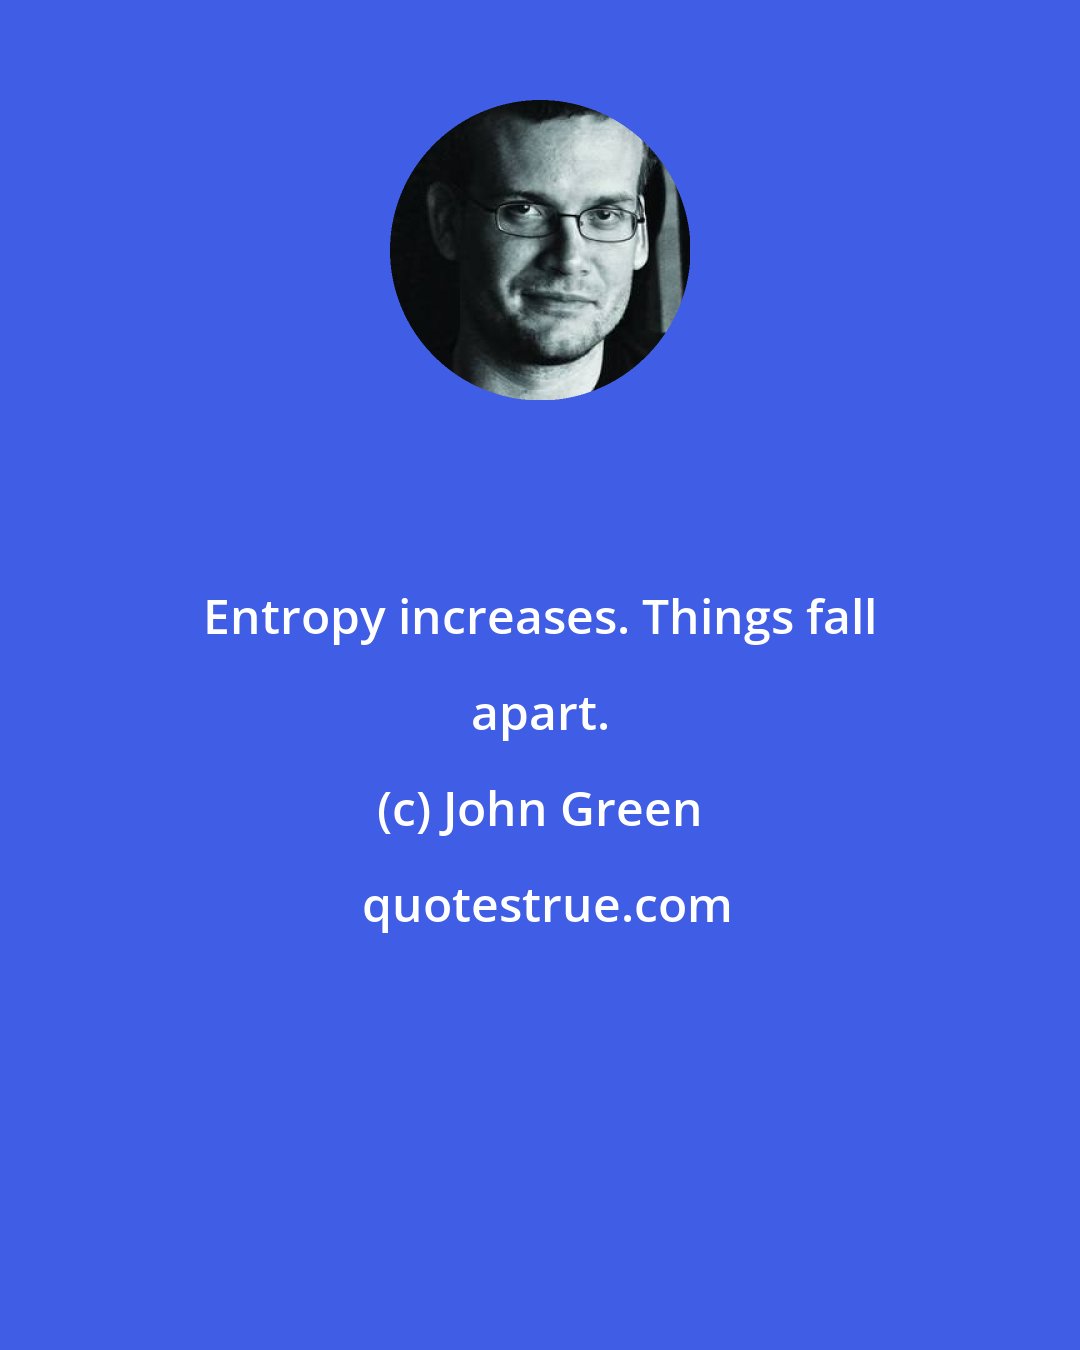 John Green: Entropy increases. Things fall apart.